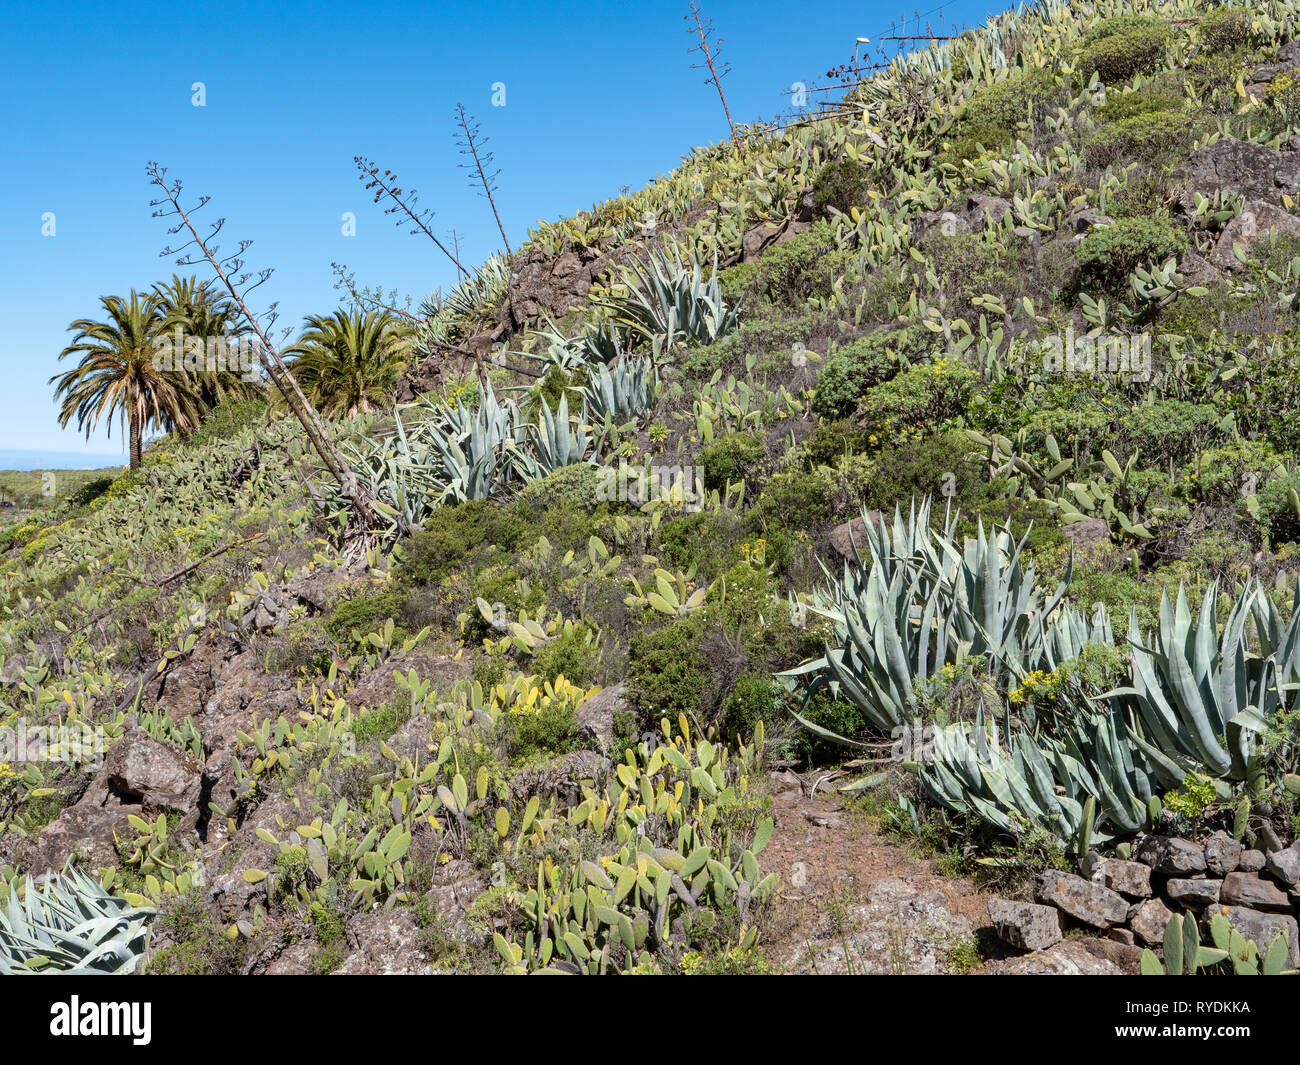 Une colline aride de La Gomera dans les Canaries couvert de cactus opuntia aloes et de palmiers et autres plantes xérophytiques Banque D'Images